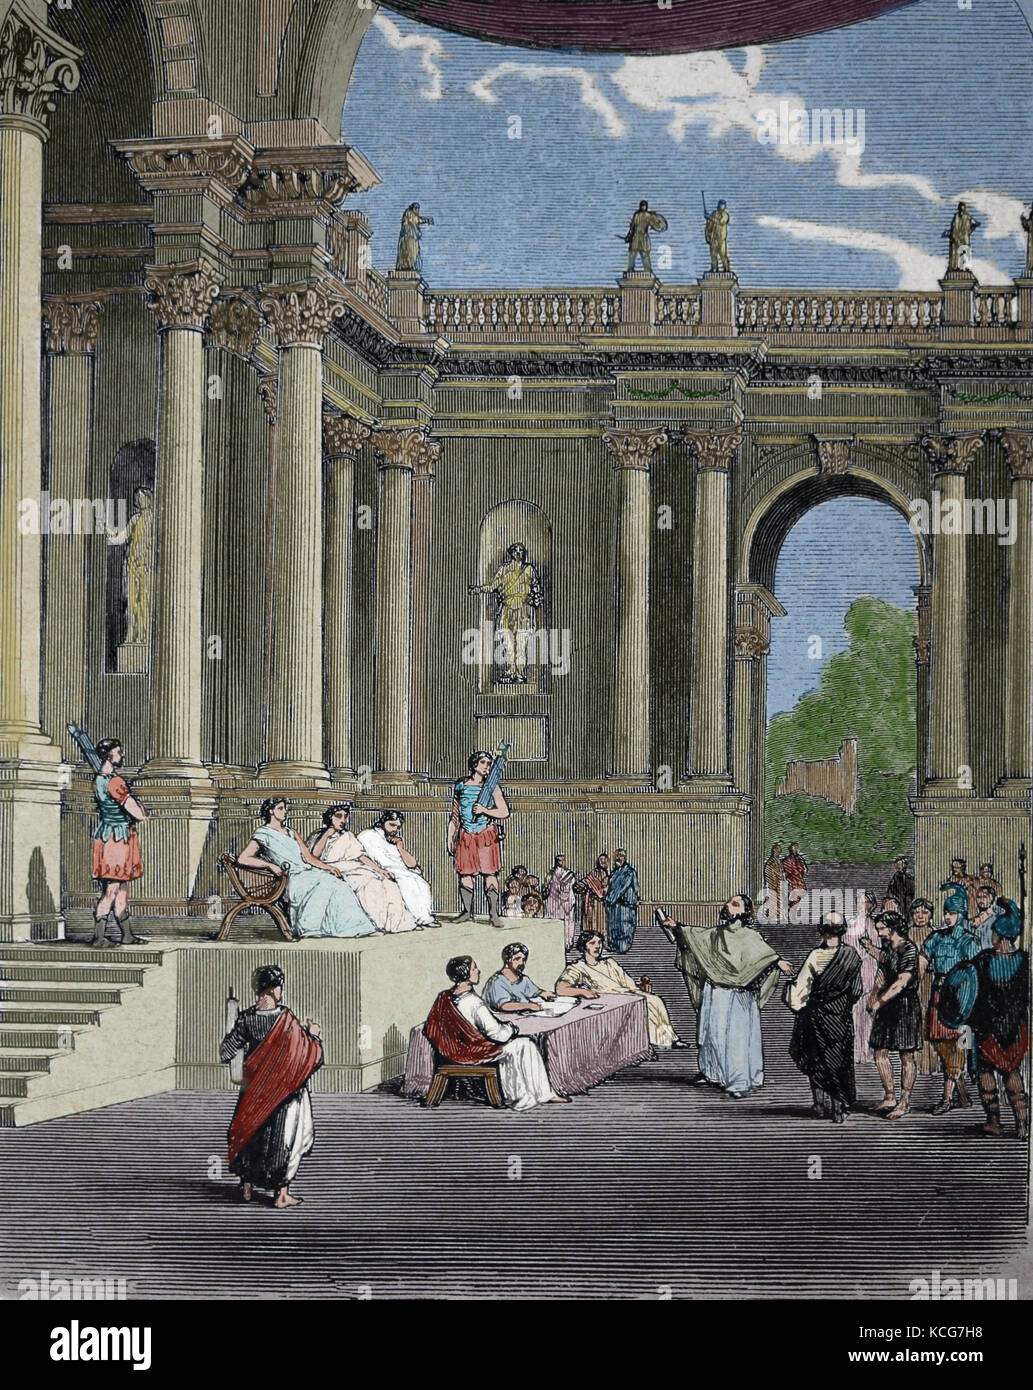 Praetorium romain ou palais de Ponce Pilate, préfet romain de Judée, Jérusalem. gravure, 1890. couleur. Banque D'Images